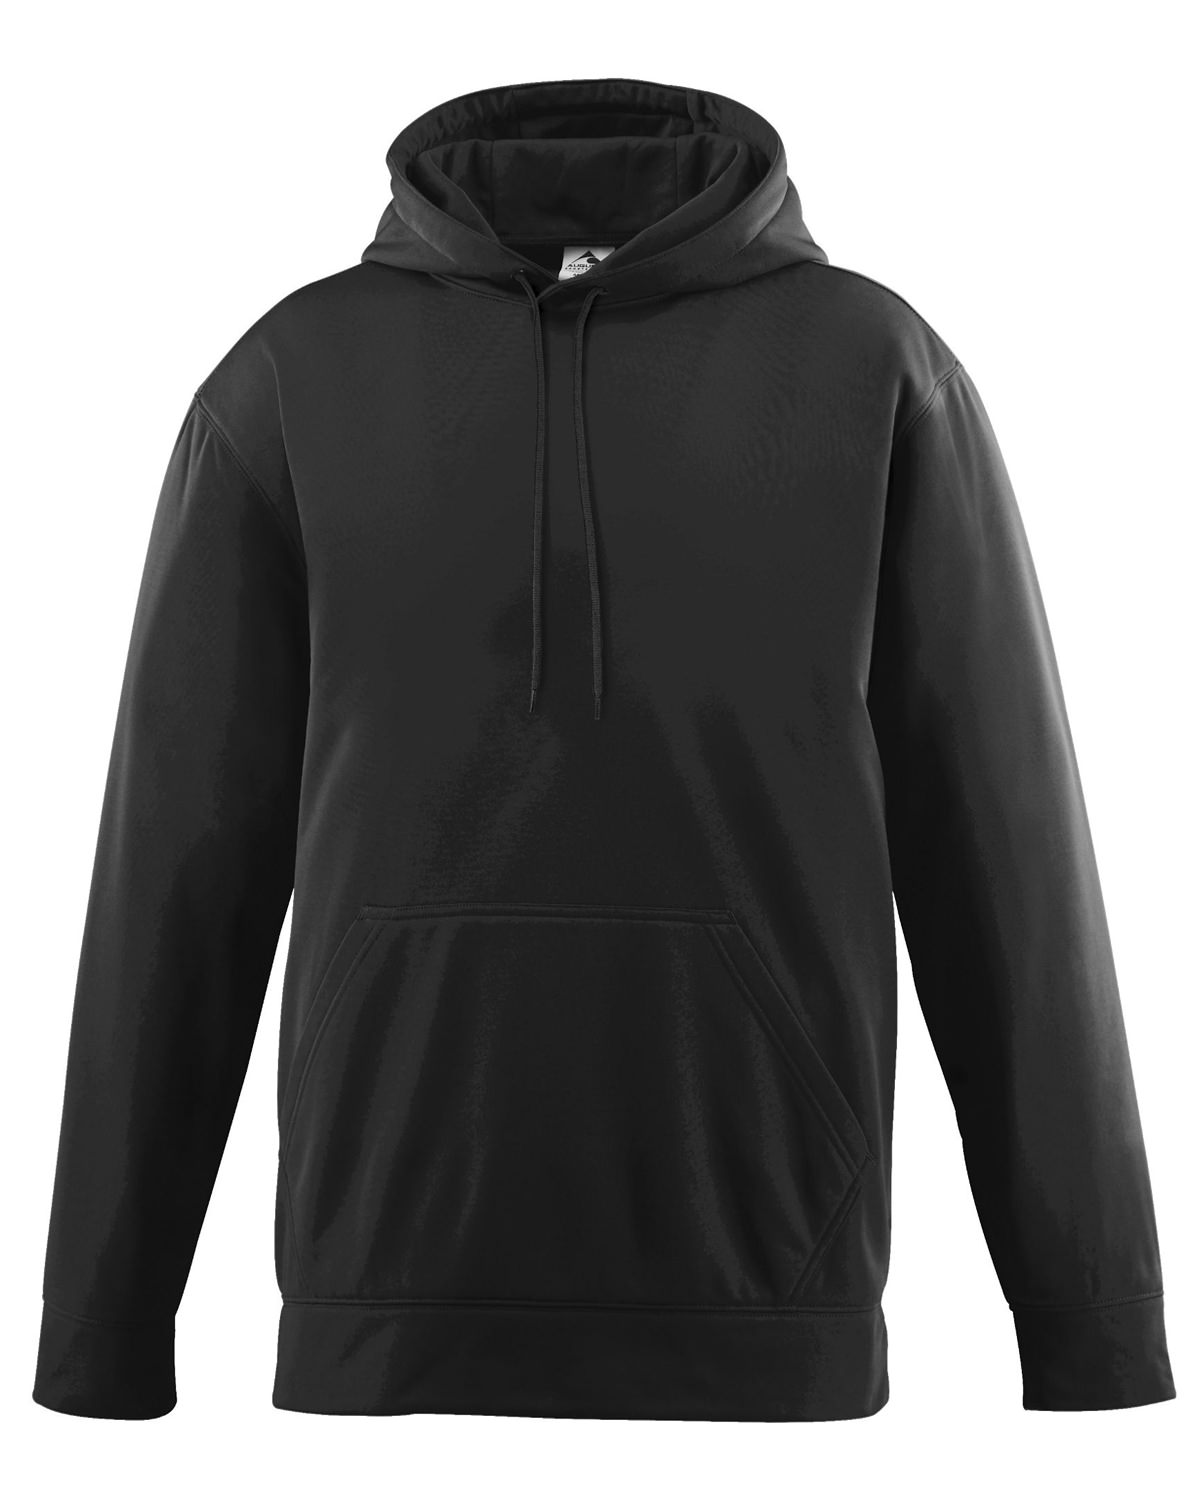 Augusta Sportswear Unisex-Adult Wicking Fleece Hooded Sweatshirt 